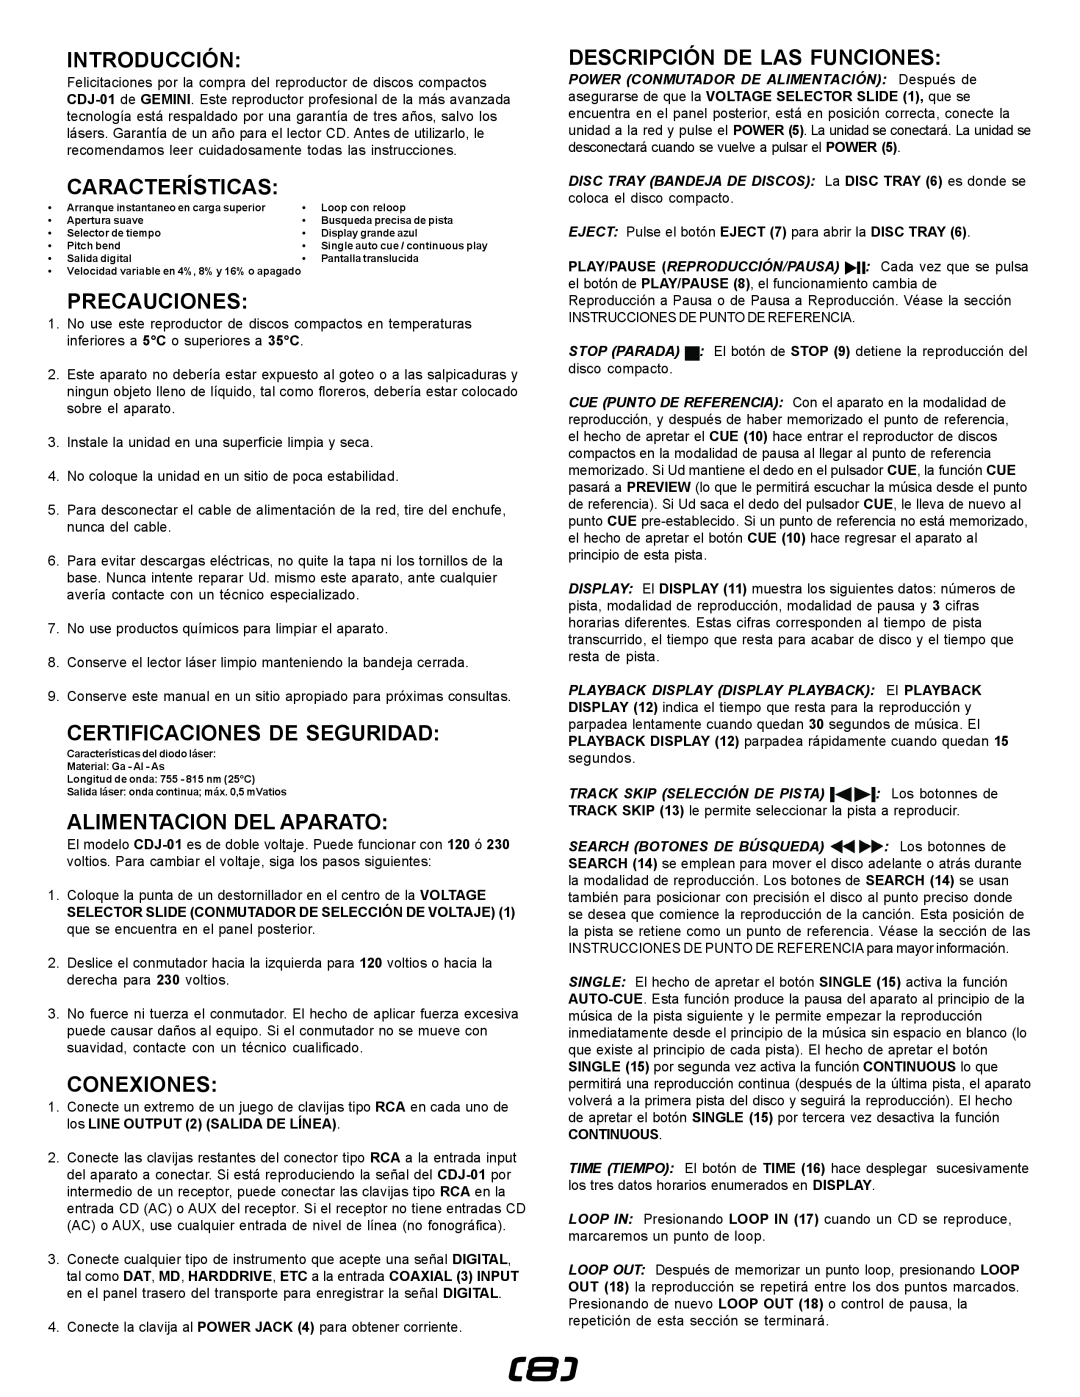 Gemini CDJ-0I manual Introducción, Características, Precauciones, Certificaciones De Seguridad, Alimentacion Del Aparato 